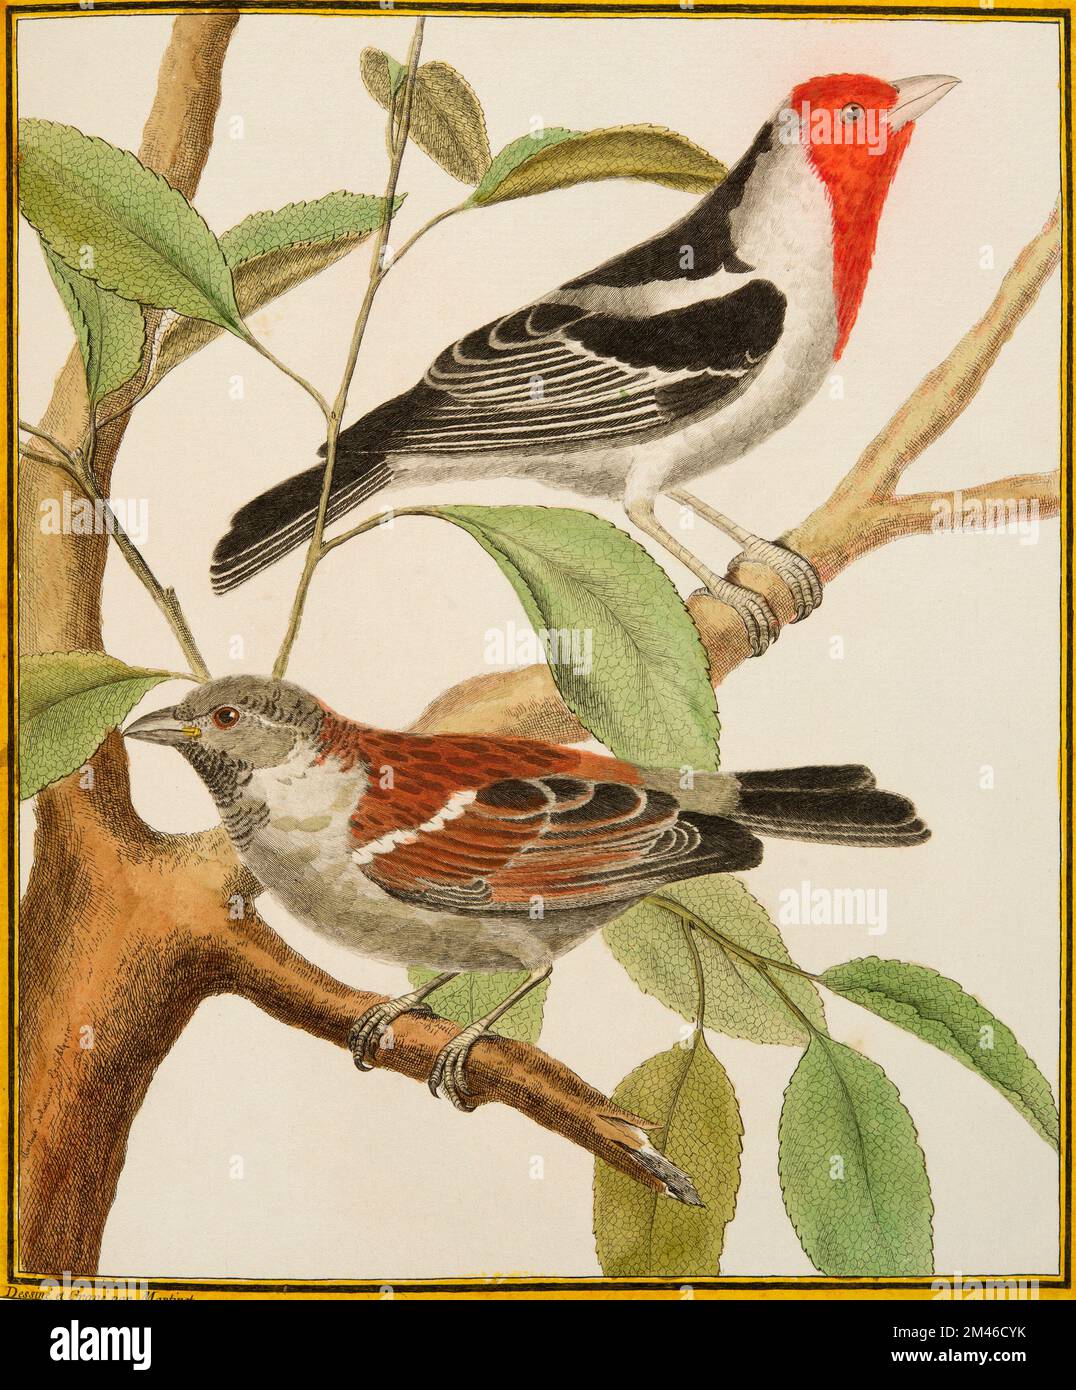 Jeune Frank Sparrow et Cardinal dominicain : plaque illuminée de l'Histoire naturelle des oiseaux par Georges Louis Leclerc, Comte de Buffon, vers 17777 Banque D'Images